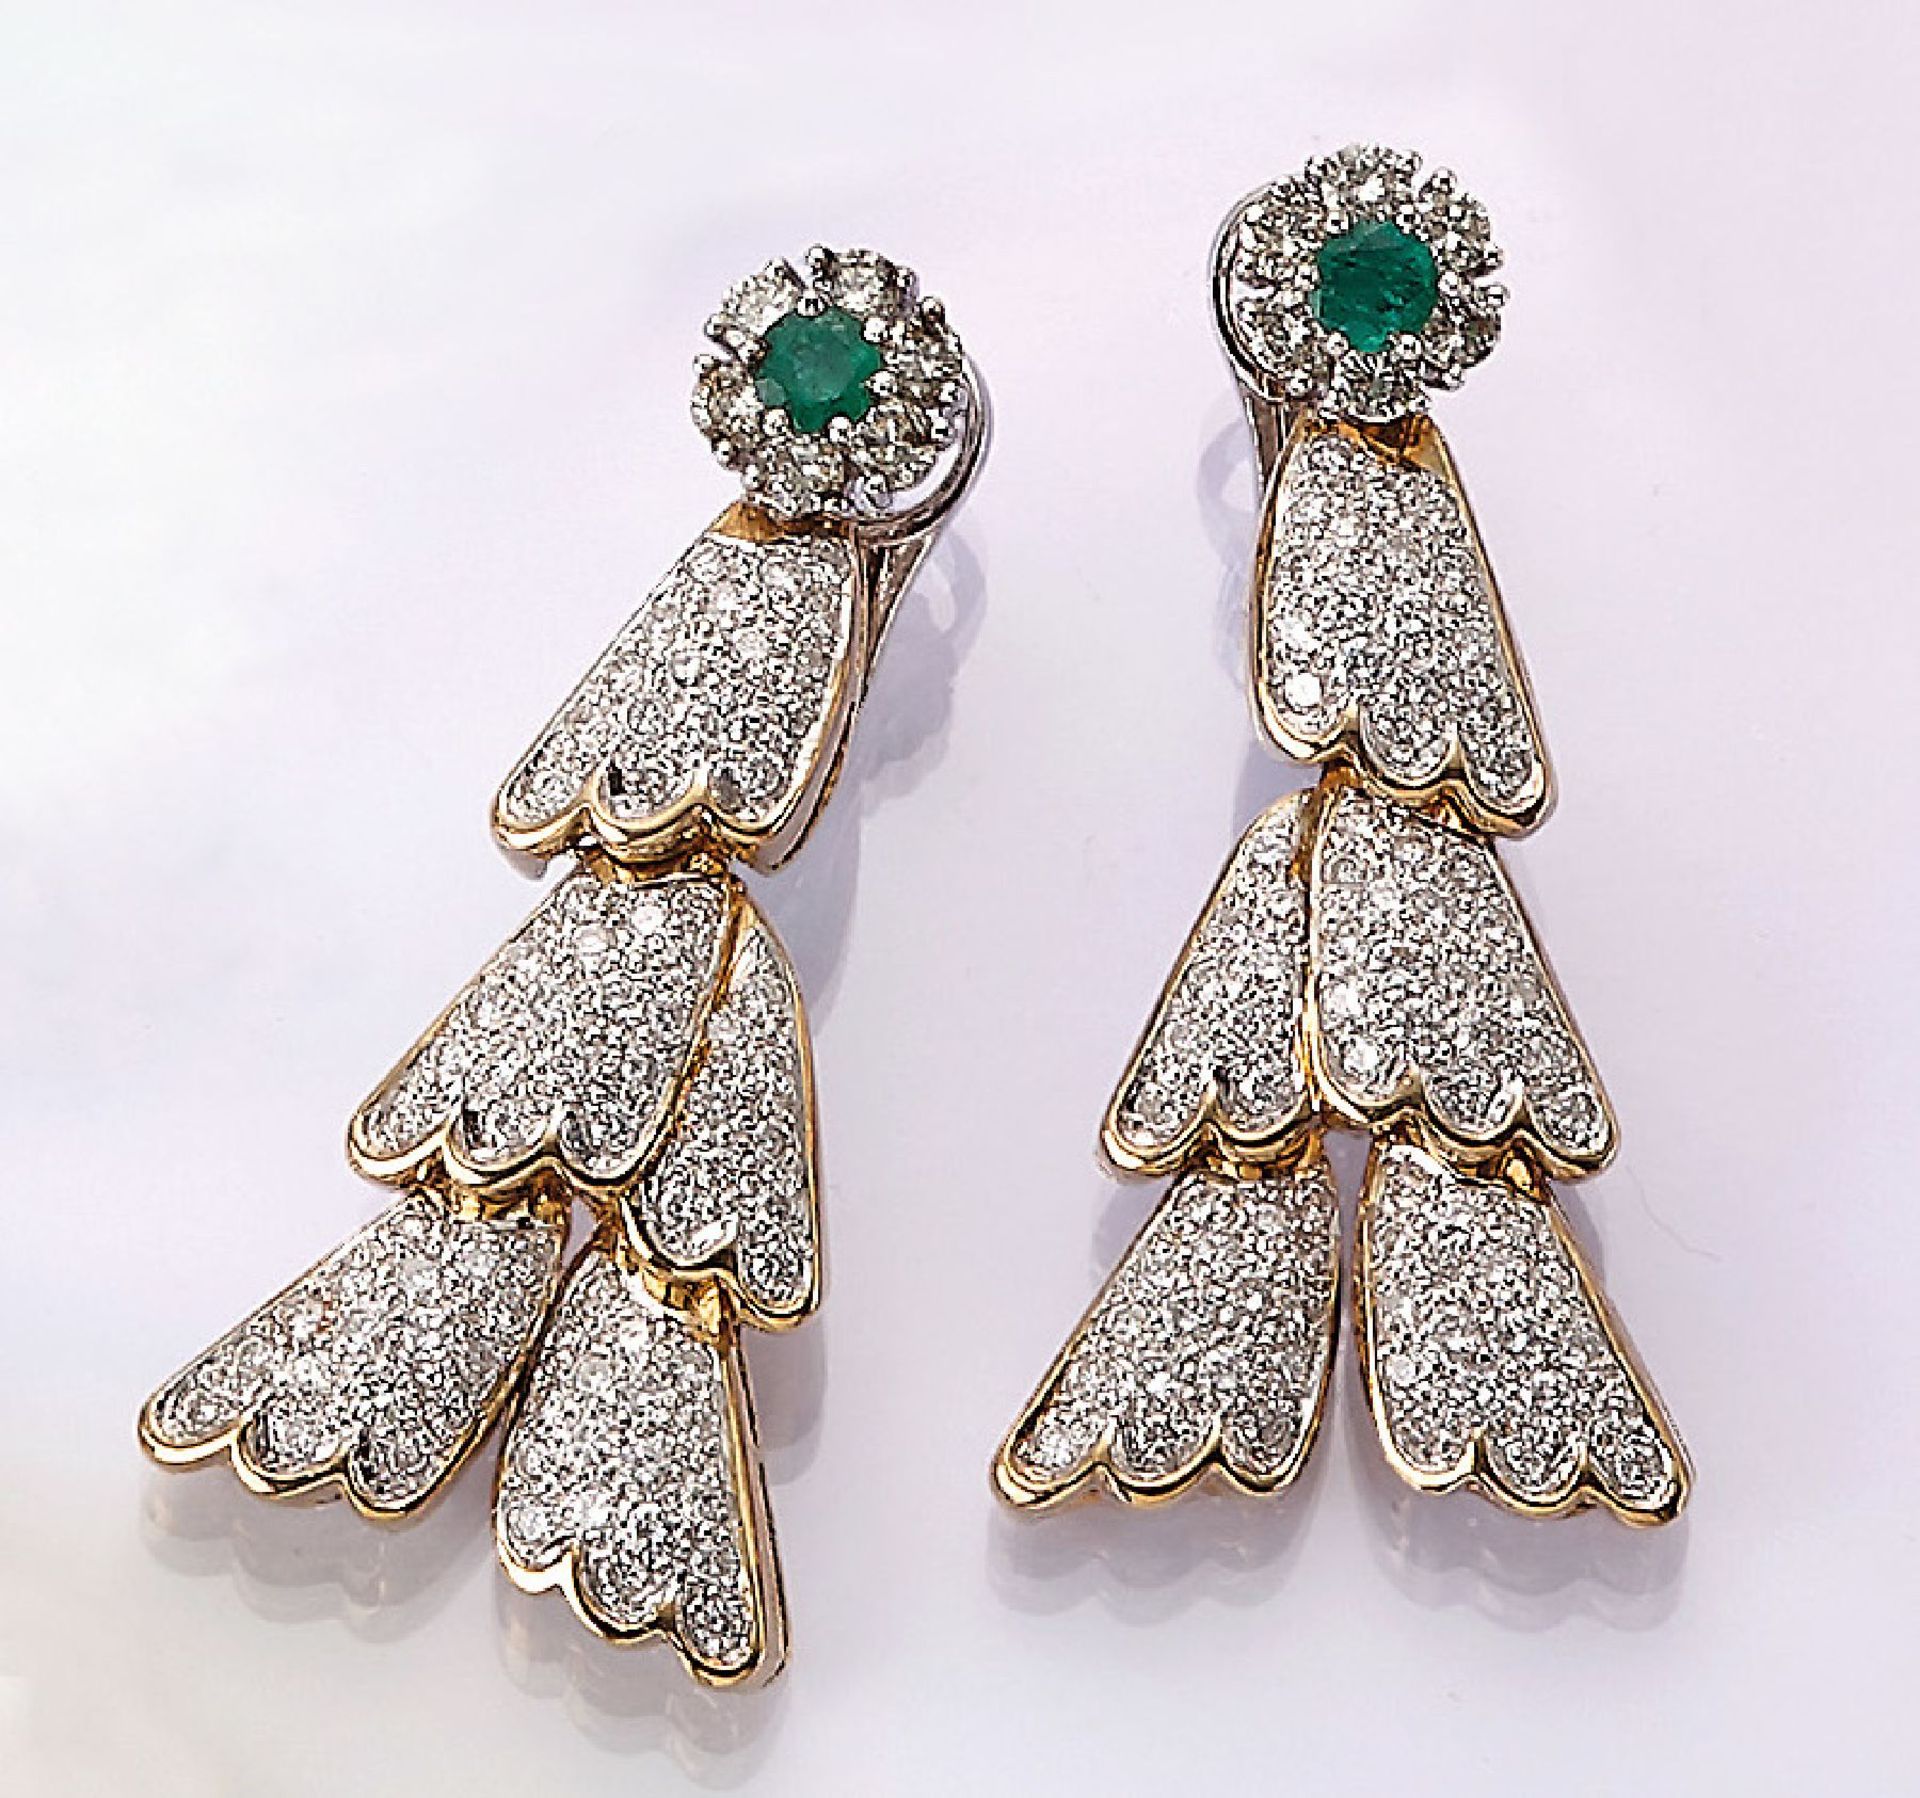 Paar 18 kt Gold Ohrgehänge mit Smaragden und Brillanten, GG/WG 750/000, 2 rundfacett. Smaragde